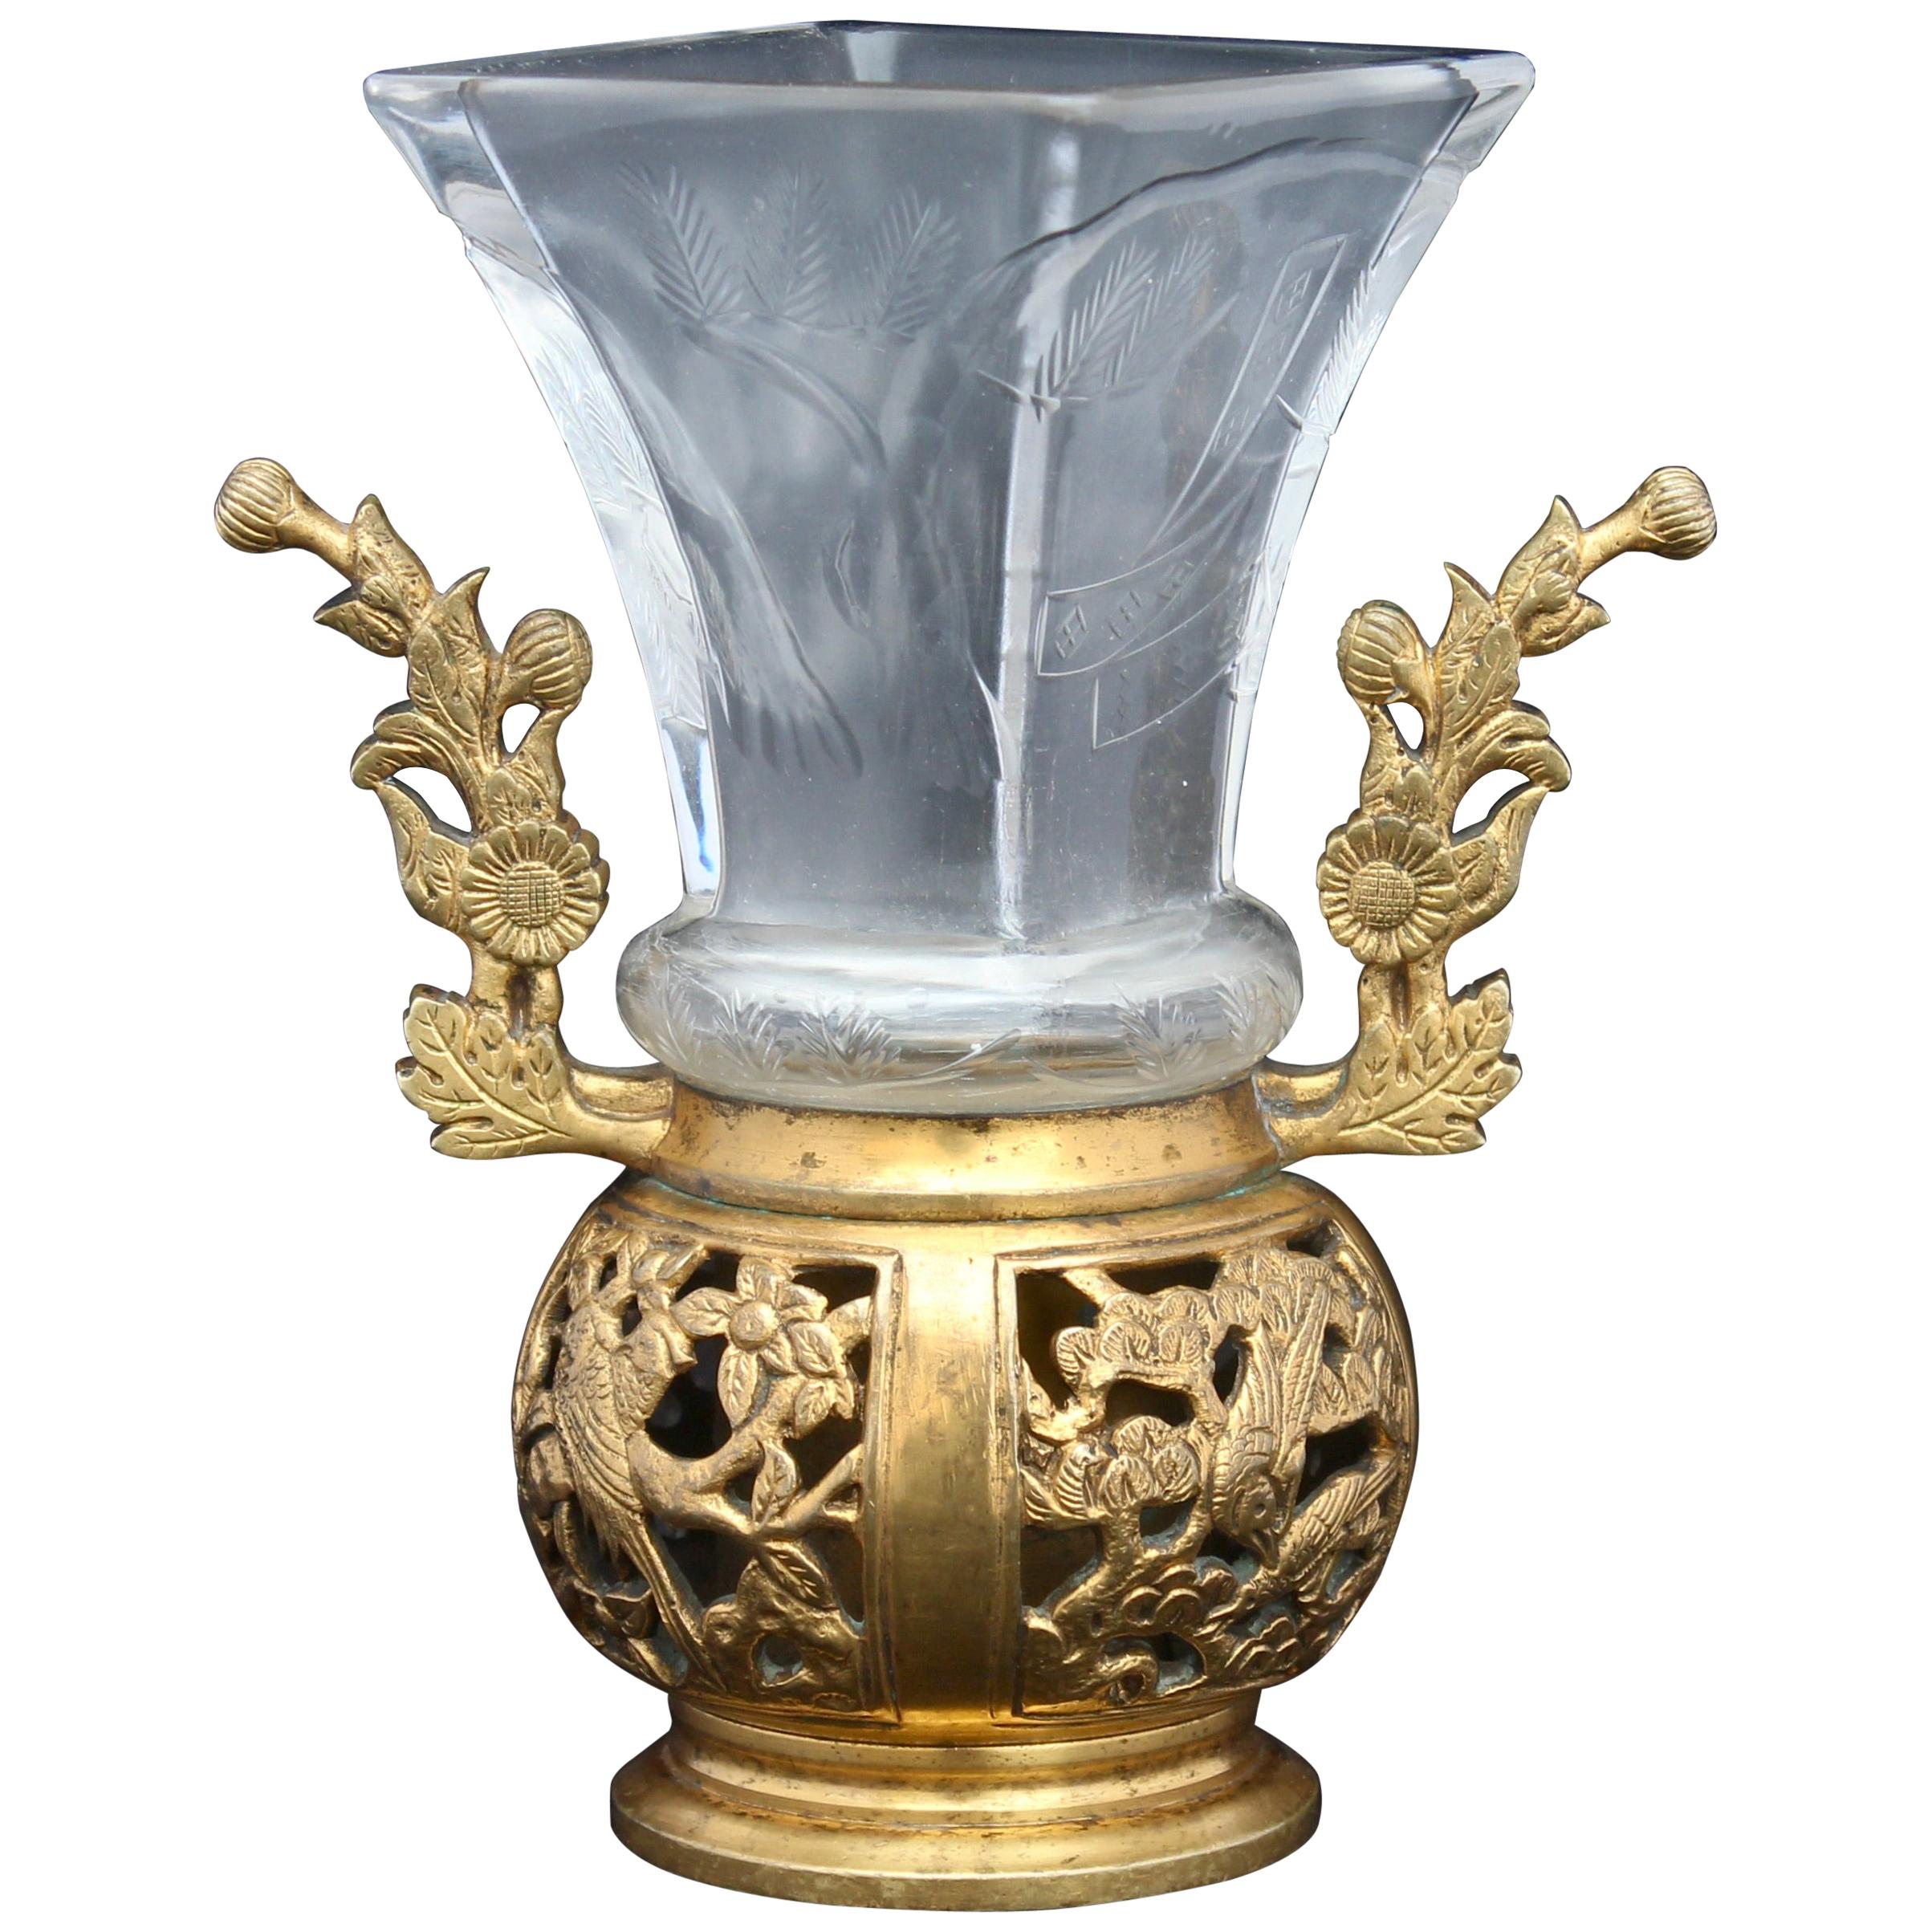 Japonisme Crystal Vase, Ormolu Mount by Maison Baccarat for Escalier De Cristal